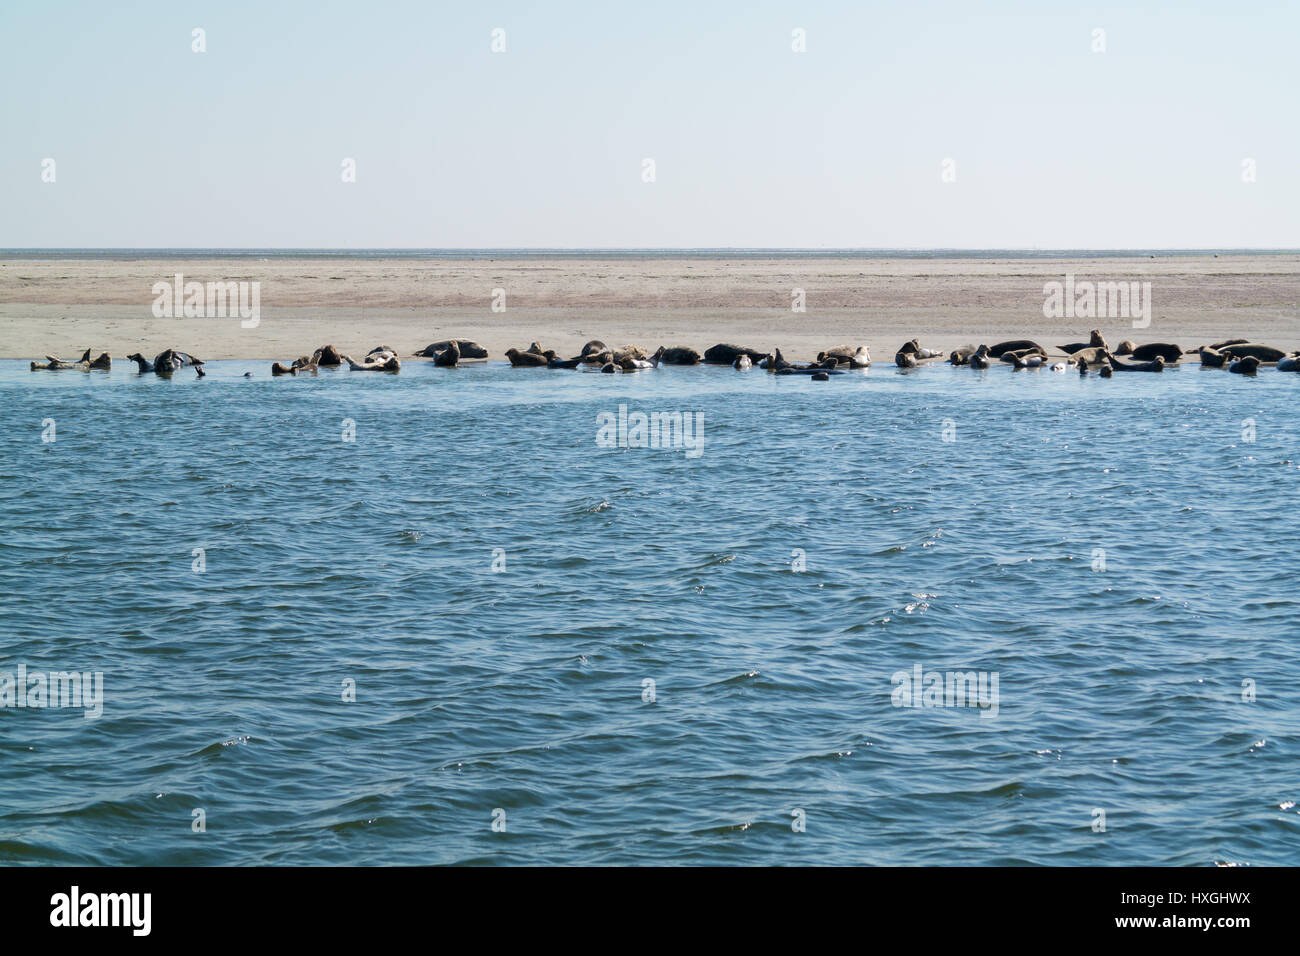 Groupe des phoques communs et gris reposant sur banc de sable à l'Eierlandse Gat, Waddensea, Pays-Bas Banque D'Images